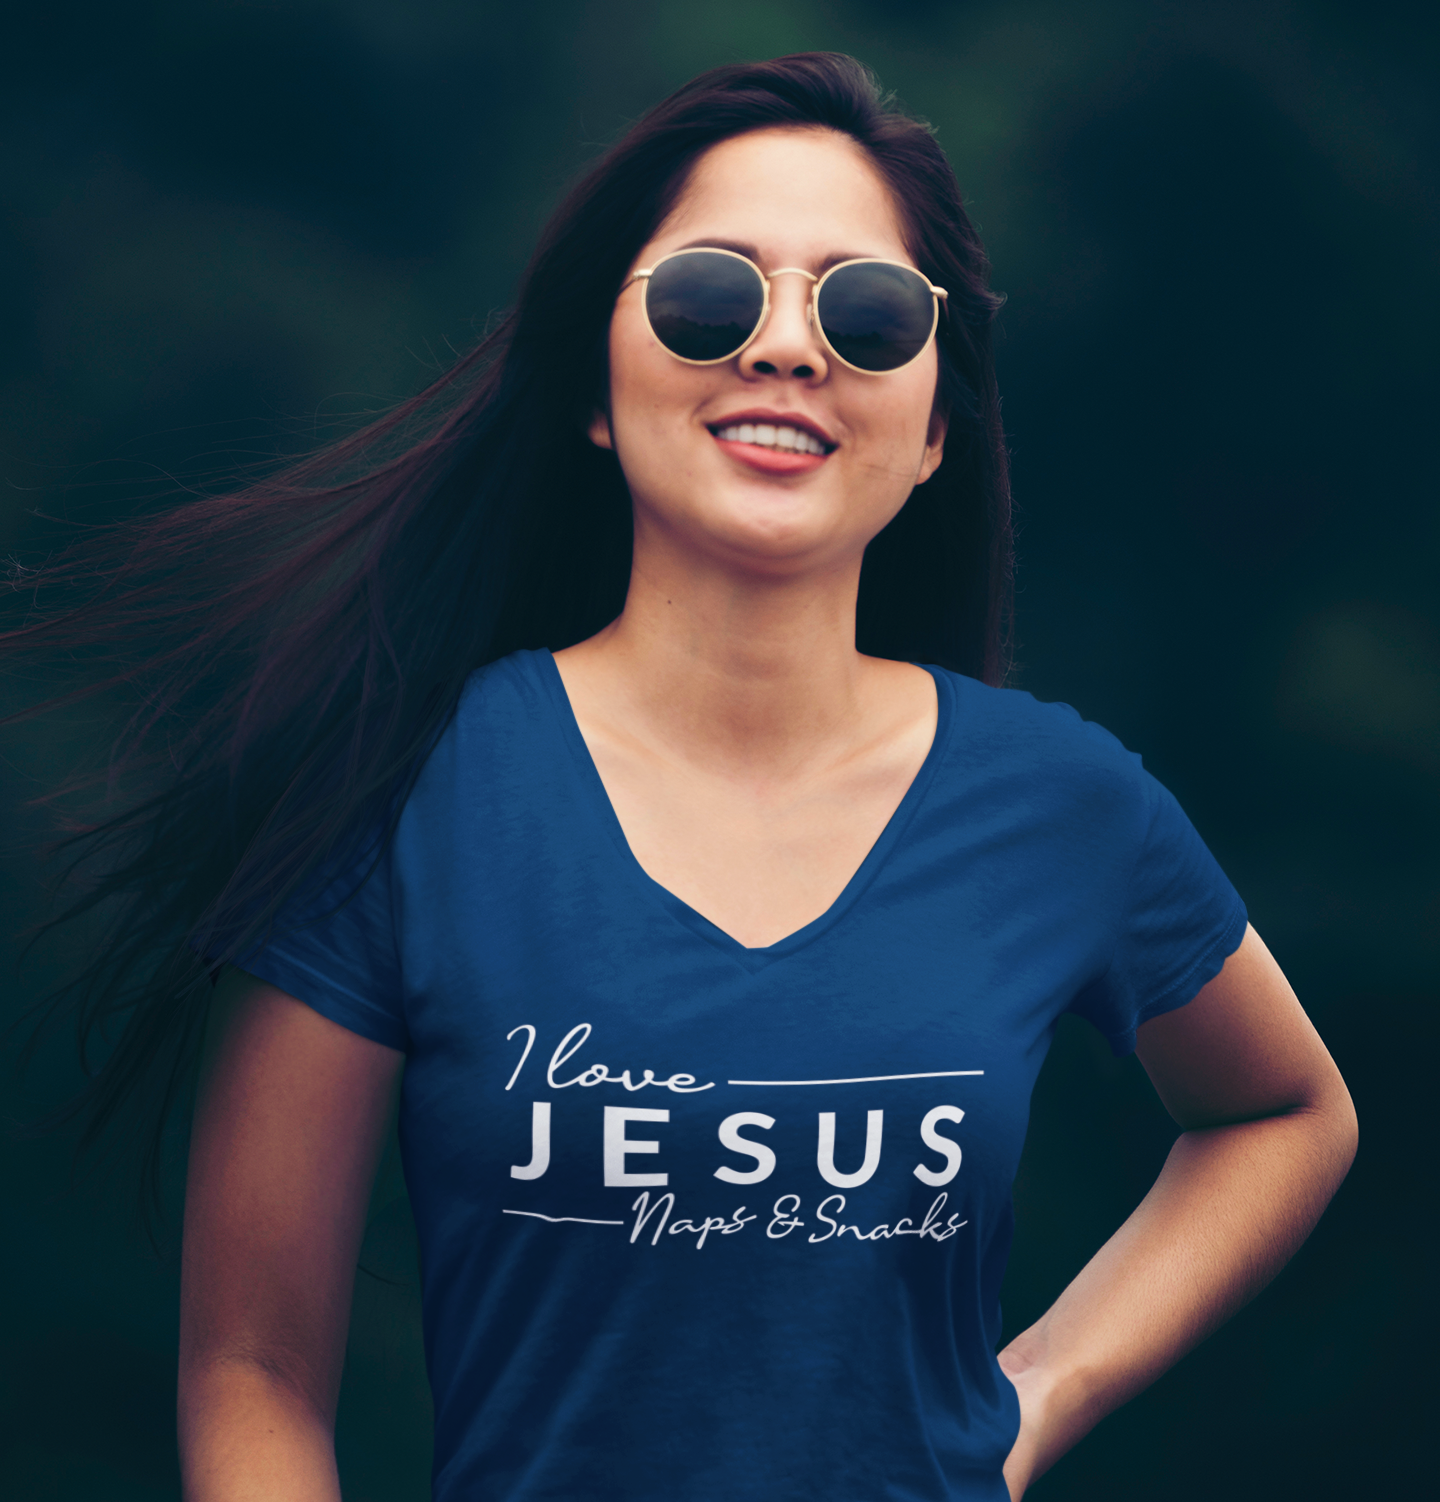 I Love Jesus Naps & Snacks Women's V-Neck